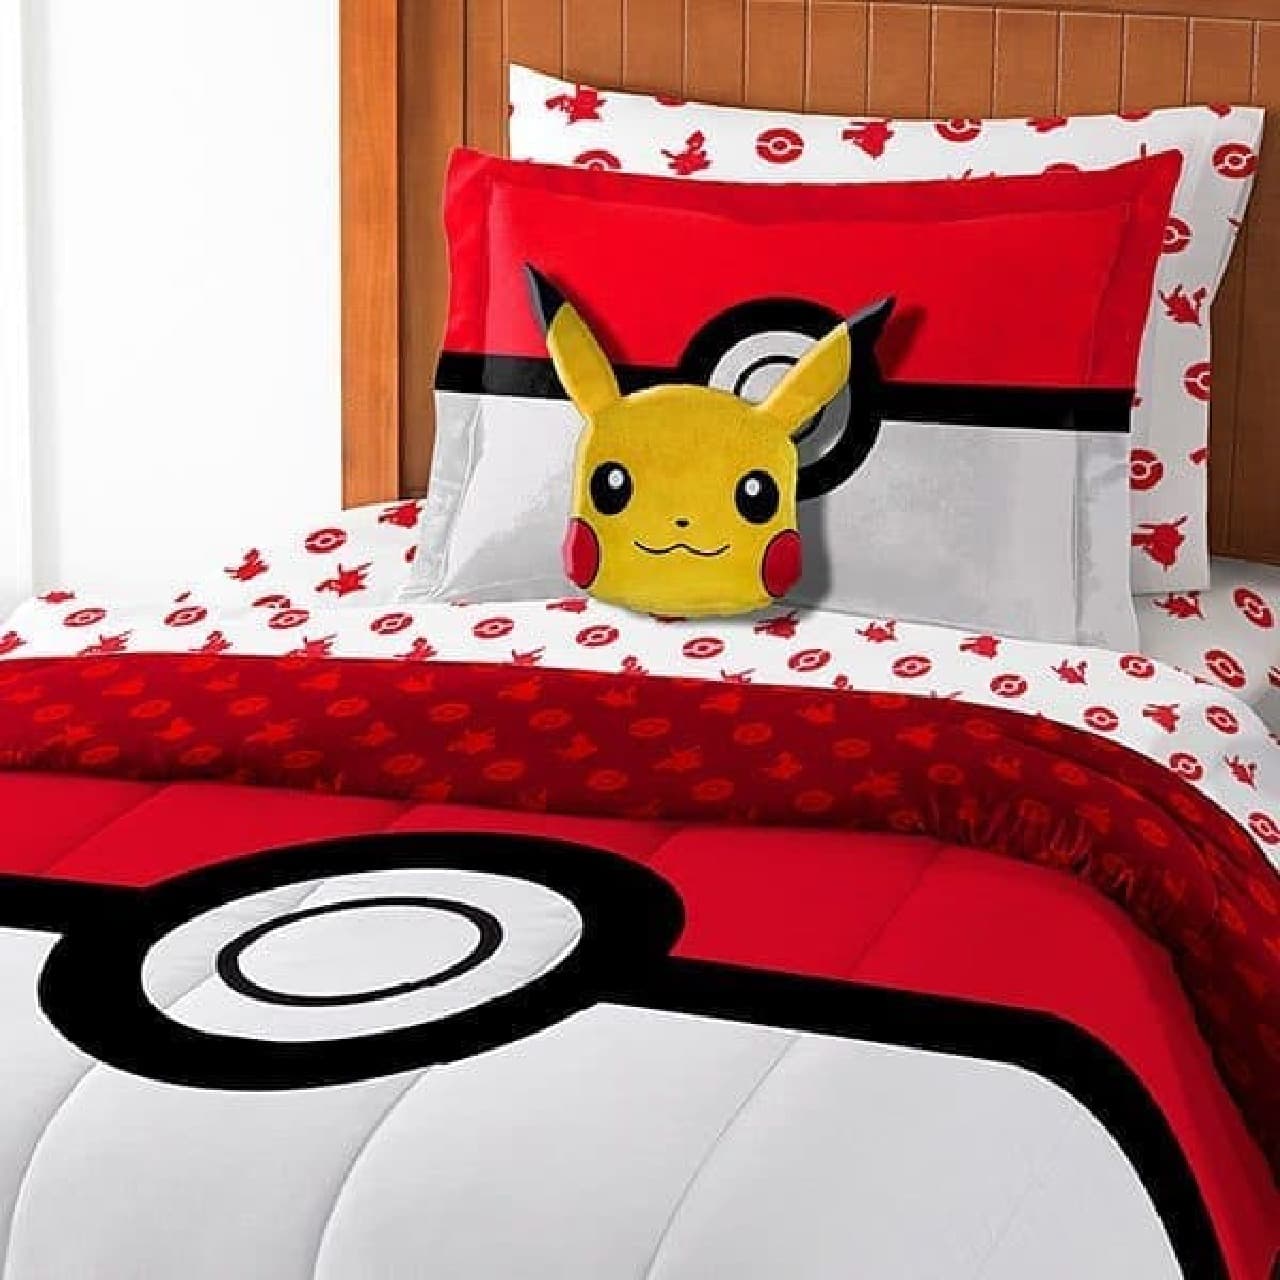 ポケモンGOモチーフのベッドシーツセット「Pokemon Bed-In-A-Bag」